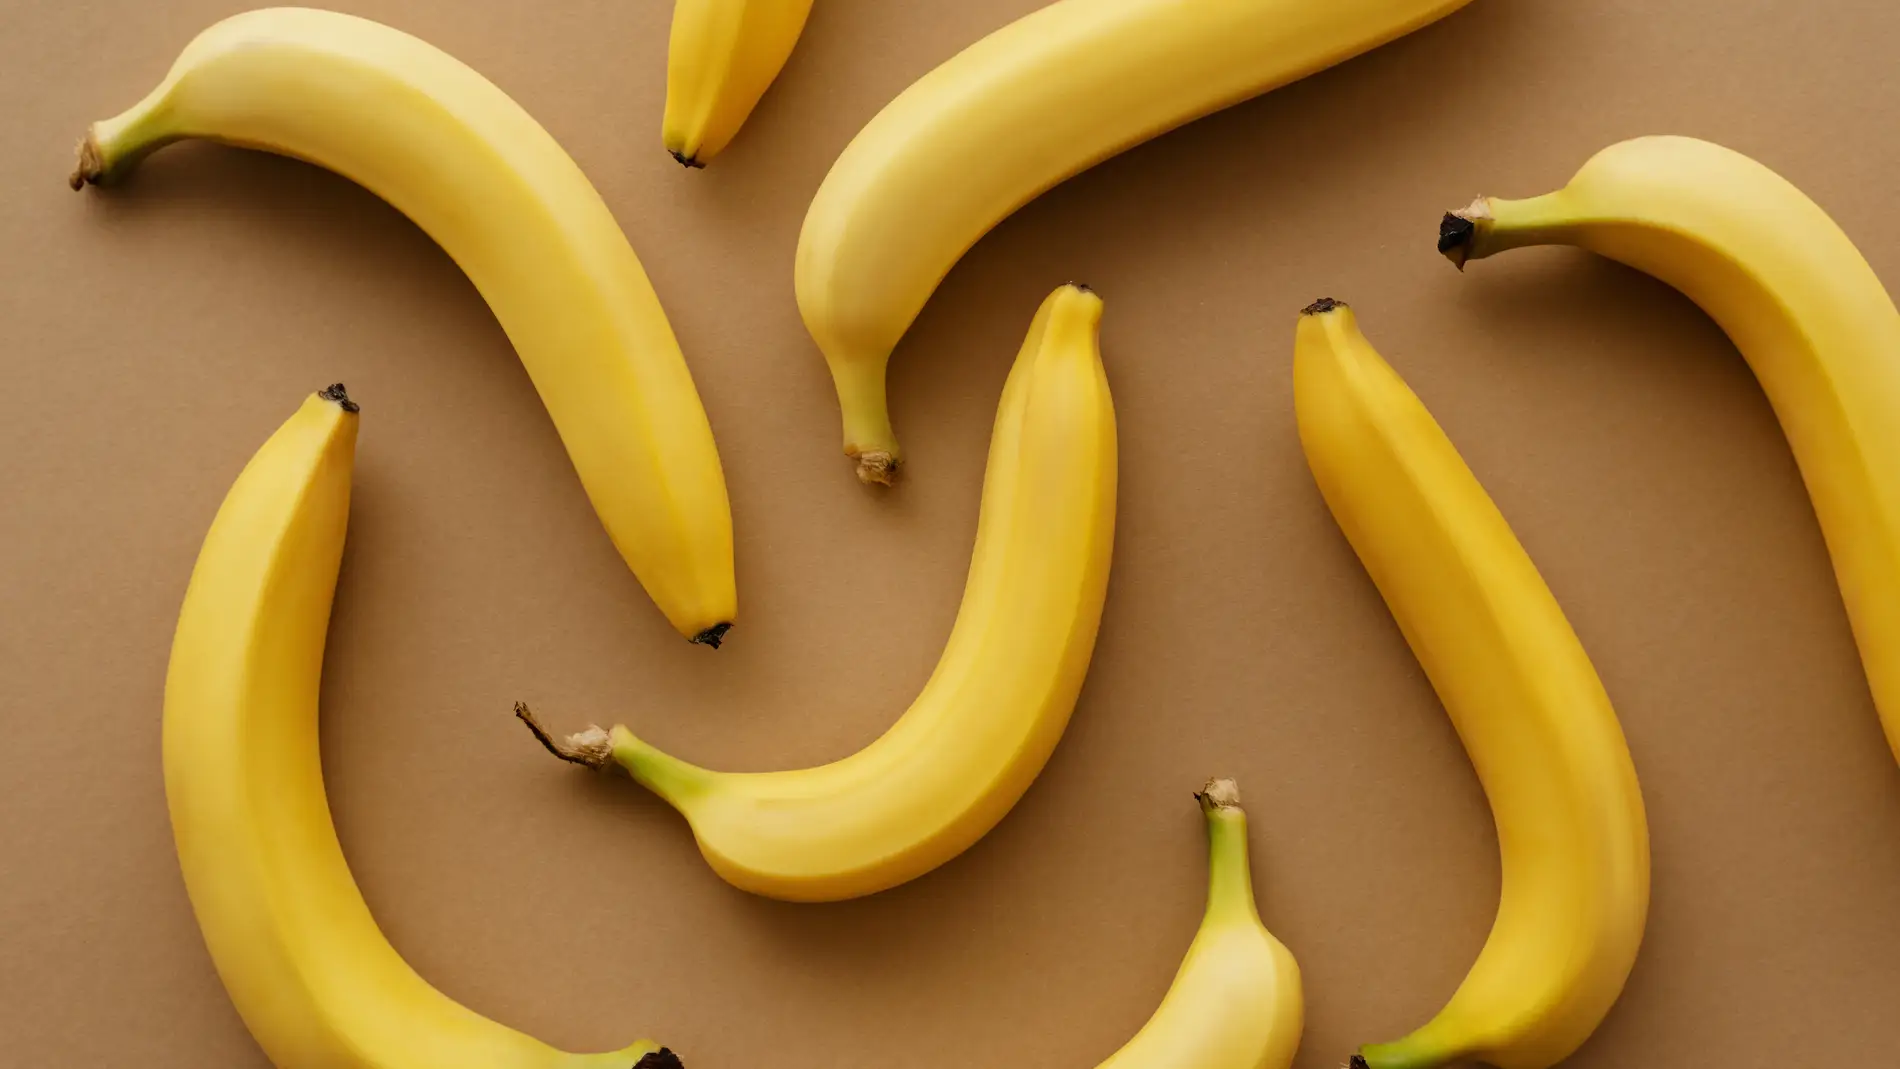 ¿Por qué lado se abren los plátanos? Esta es la forma correcta